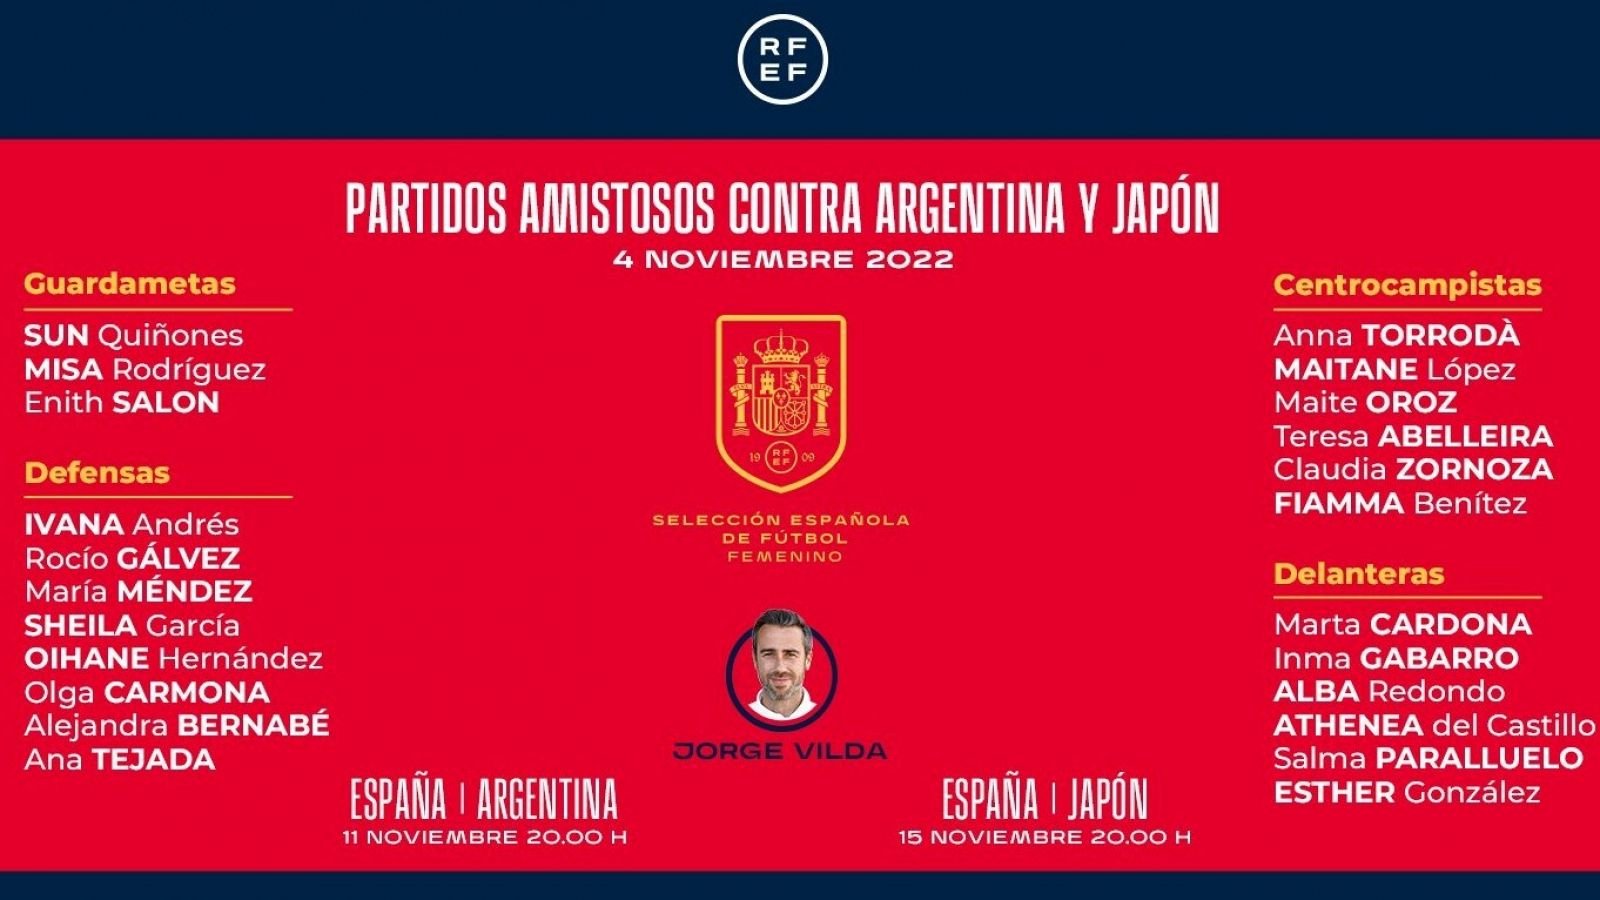 Monopolio letal Banzai Vilda llama a 23 jugadoras para jugar contra Argentina y Japón